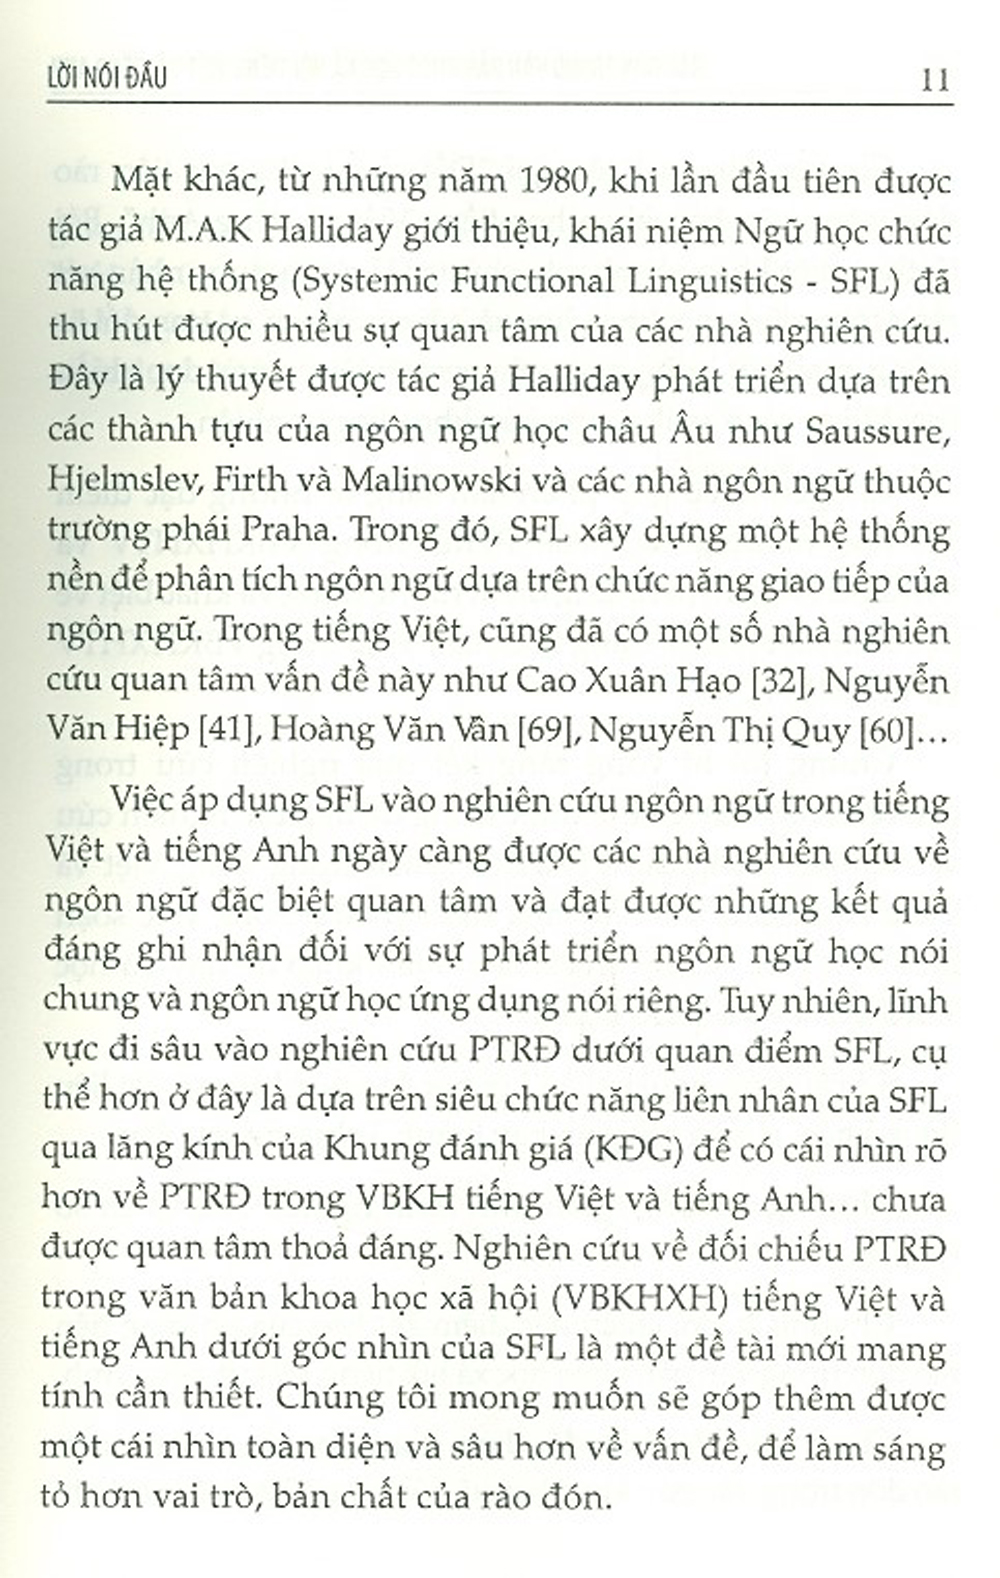 Rào Đón Trong Văn Bản Khoa Học Xã Hội Tiếng Việt Và Tiếng Anh (Sách Chuyên Khảo)